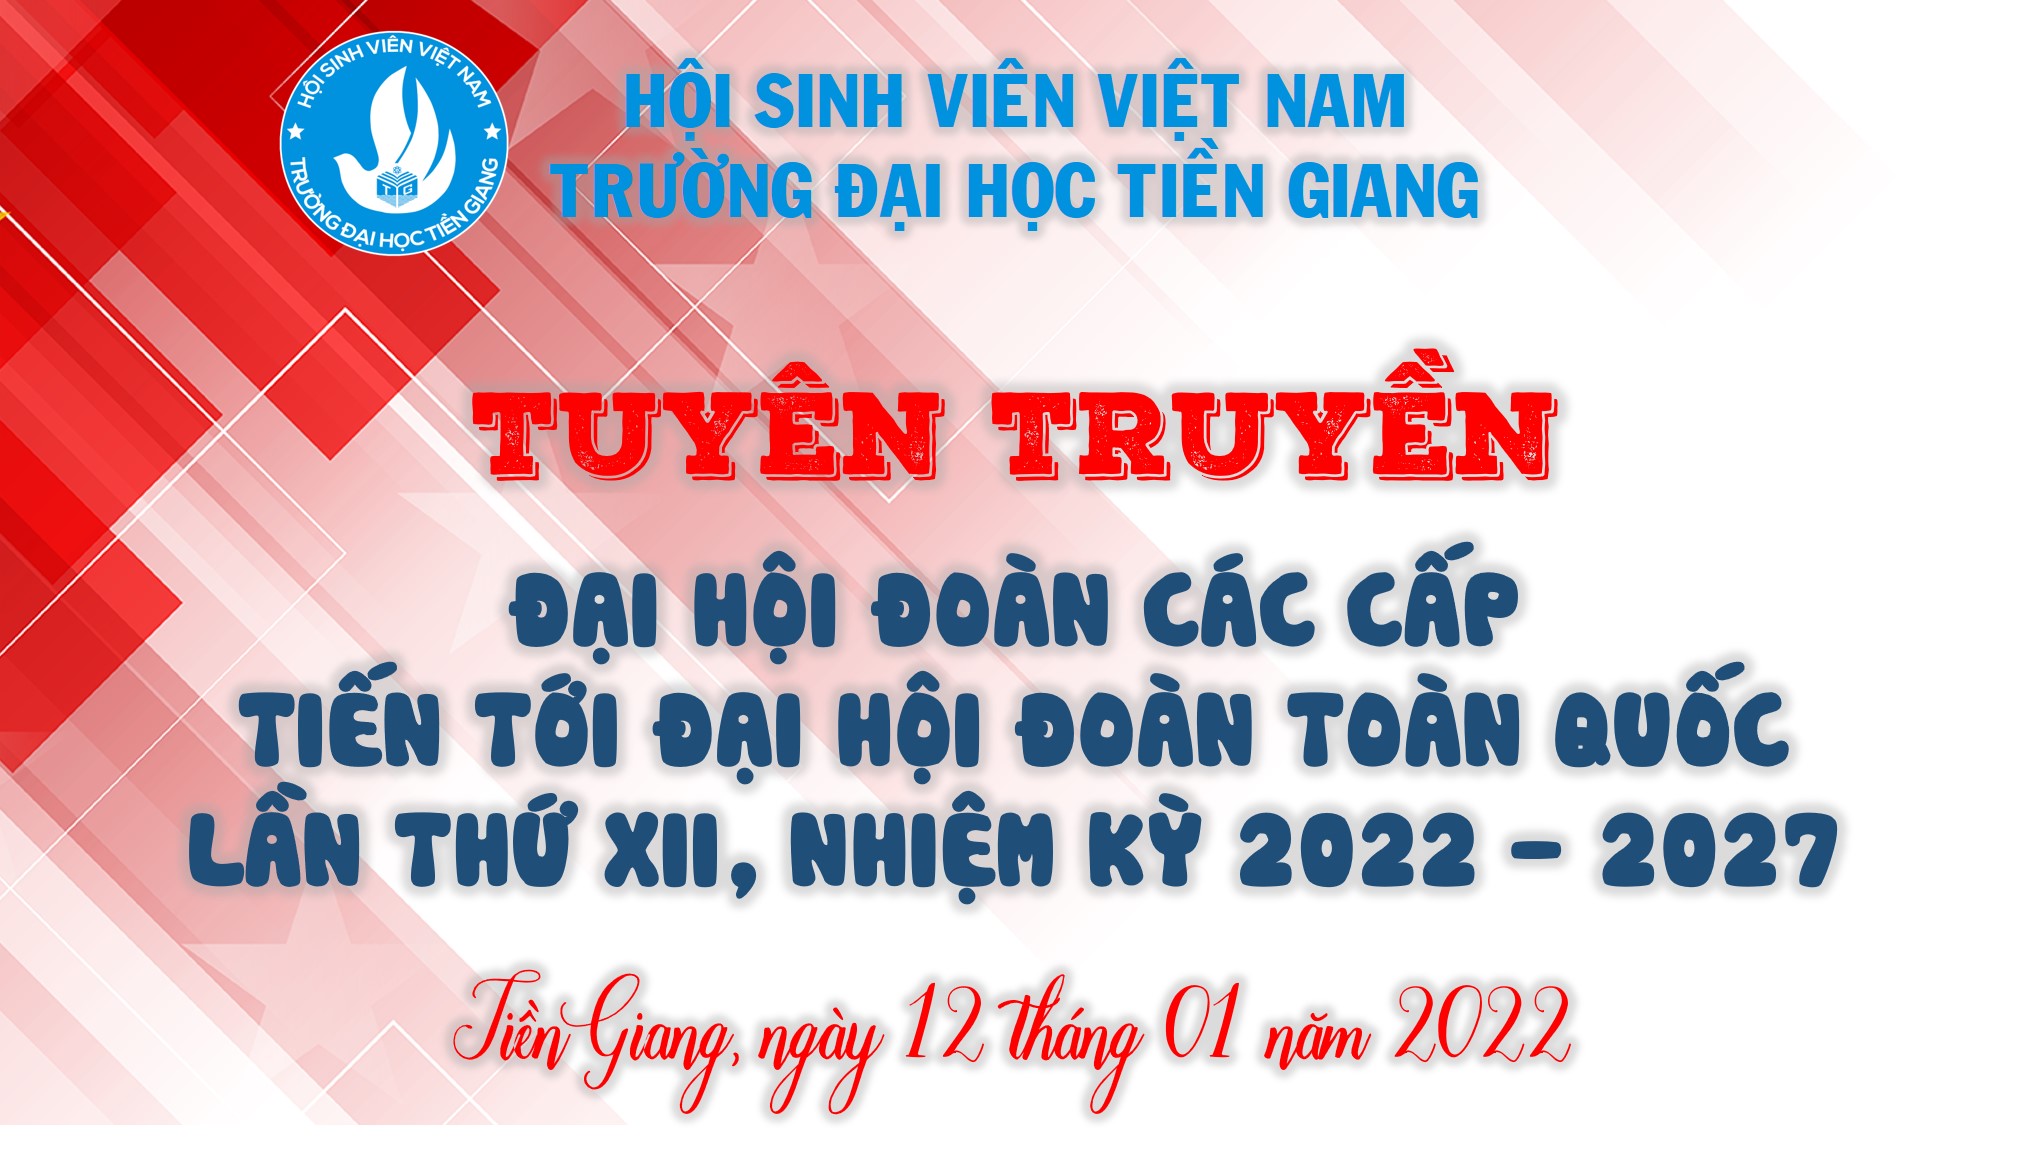 Hội Sinh viên tuyên truyền Đại hội Đoàn các cấp, tiến tới Đại hội đại biểu Đoàn TNCS Hồ Chí Minh Trường Đại học Tiền Giang lần thứ IV, nhiệm kỳ 2022-2027